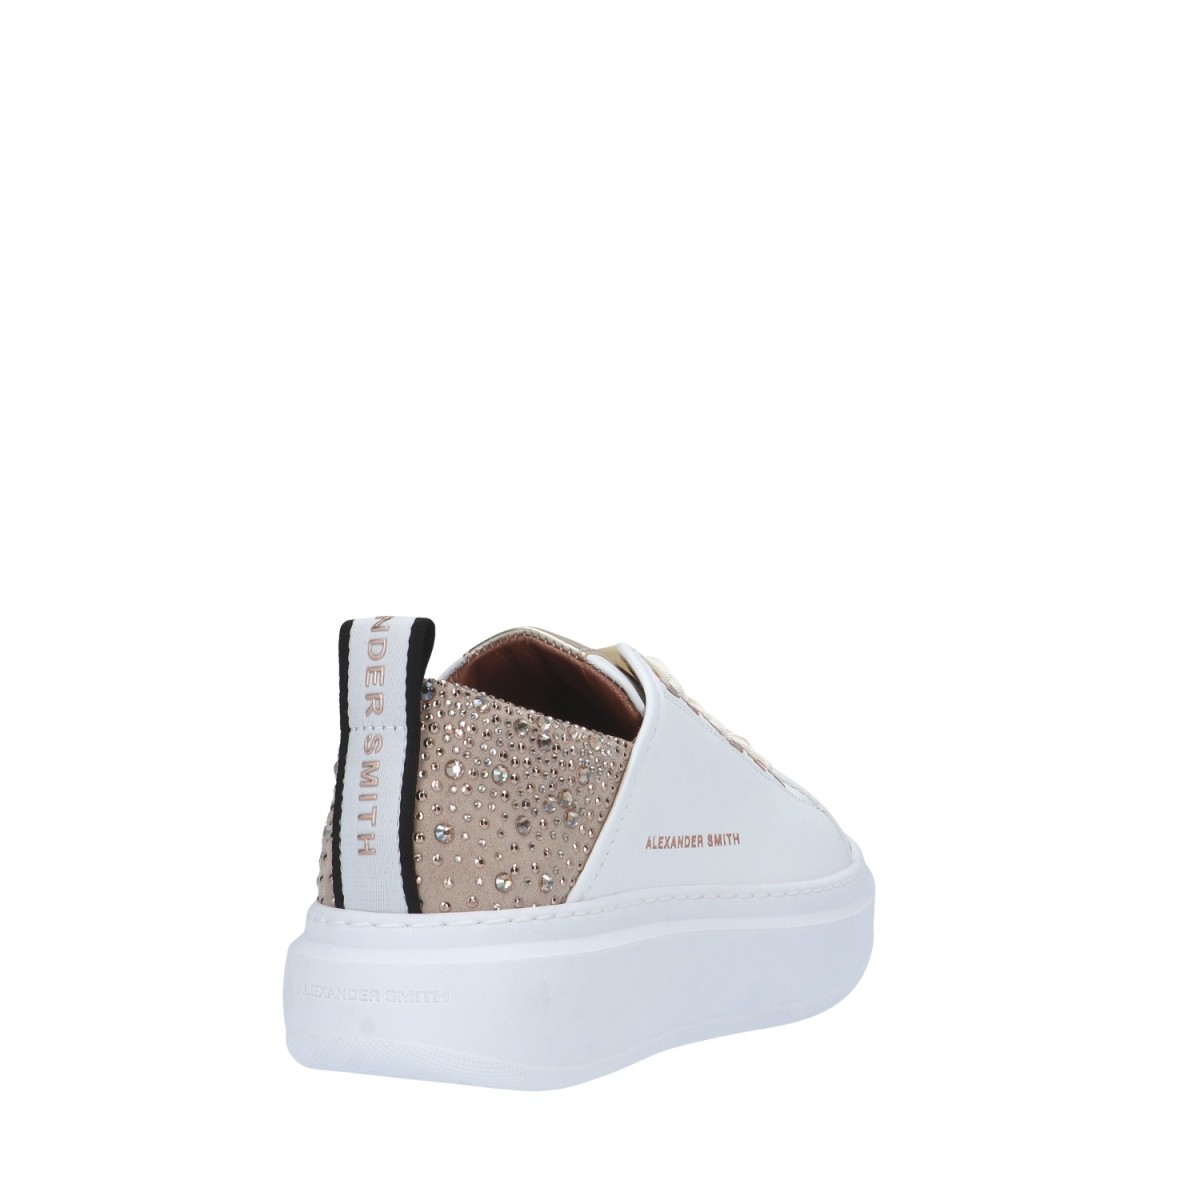 Alexander smith Sneaker Bianco/oro Gomma WYW-0506-WGD